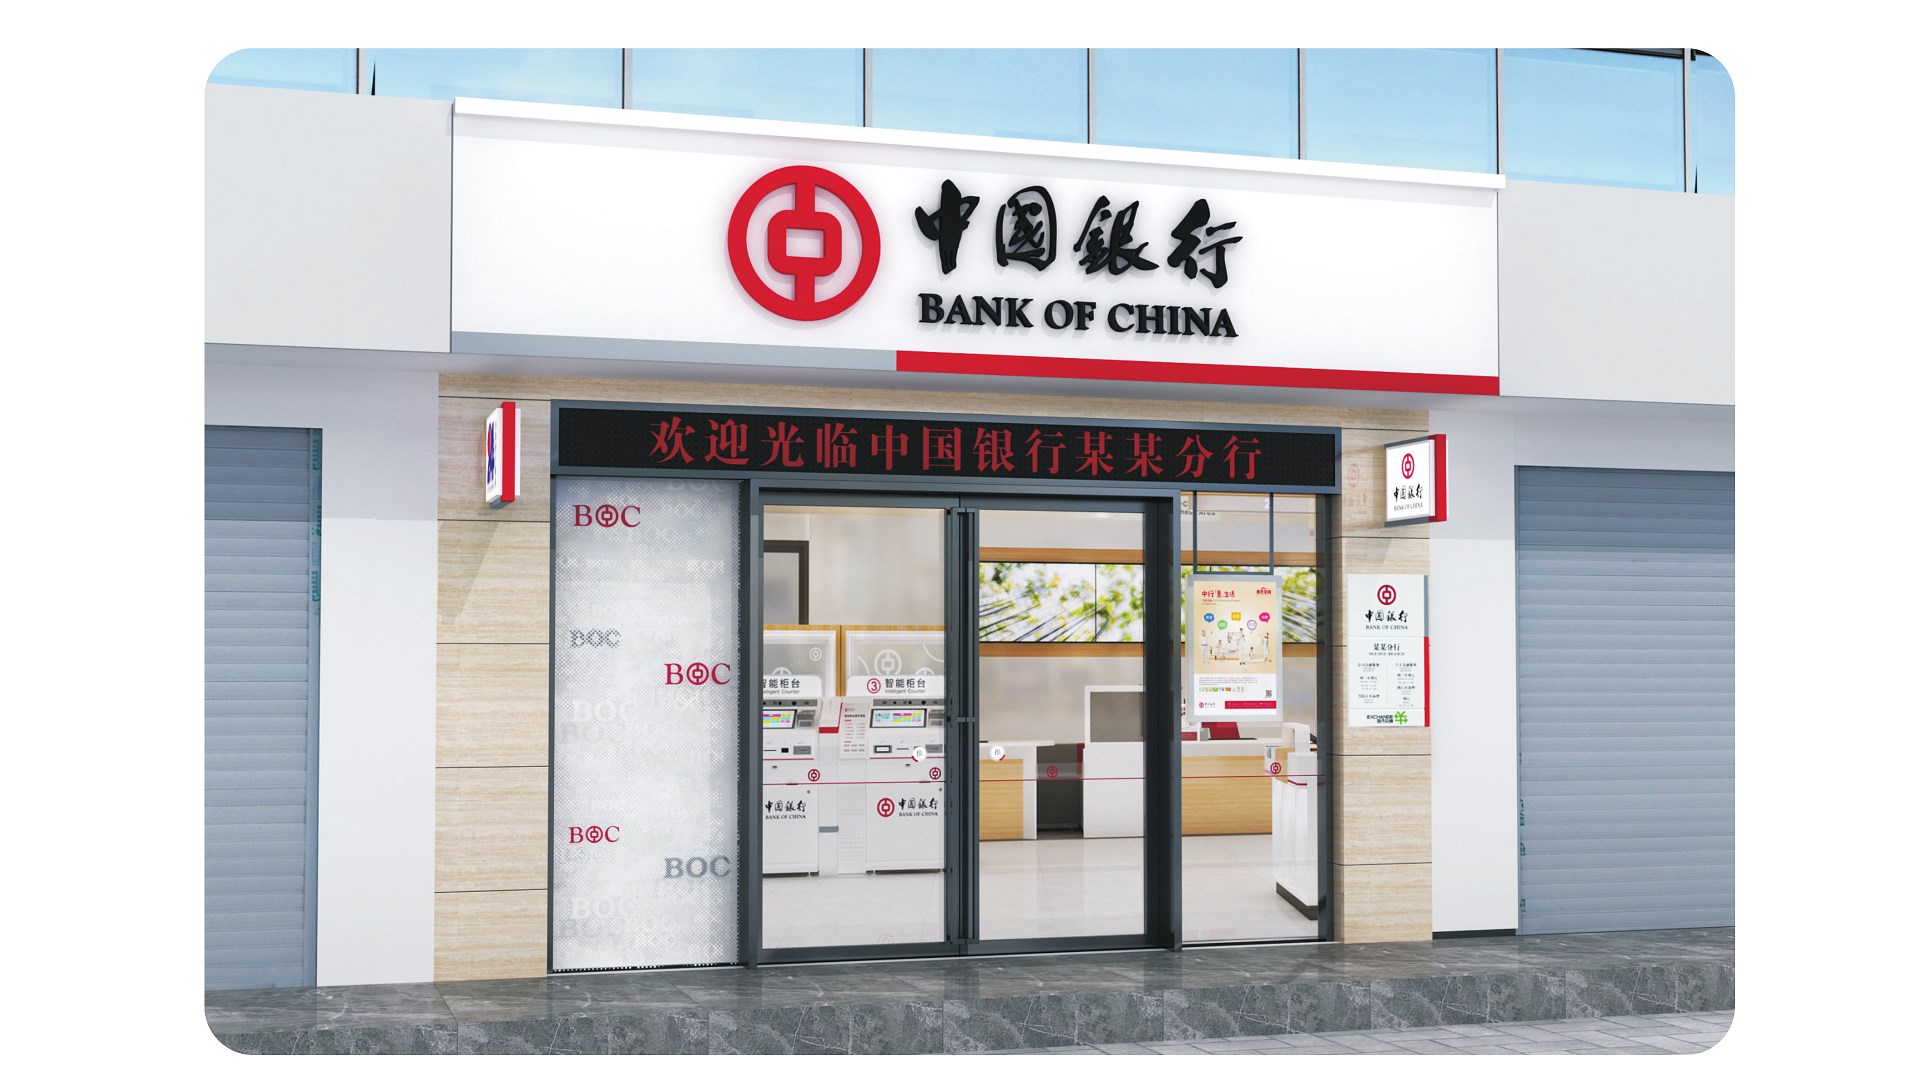 中国银行_画板 1 副本 2.jpg